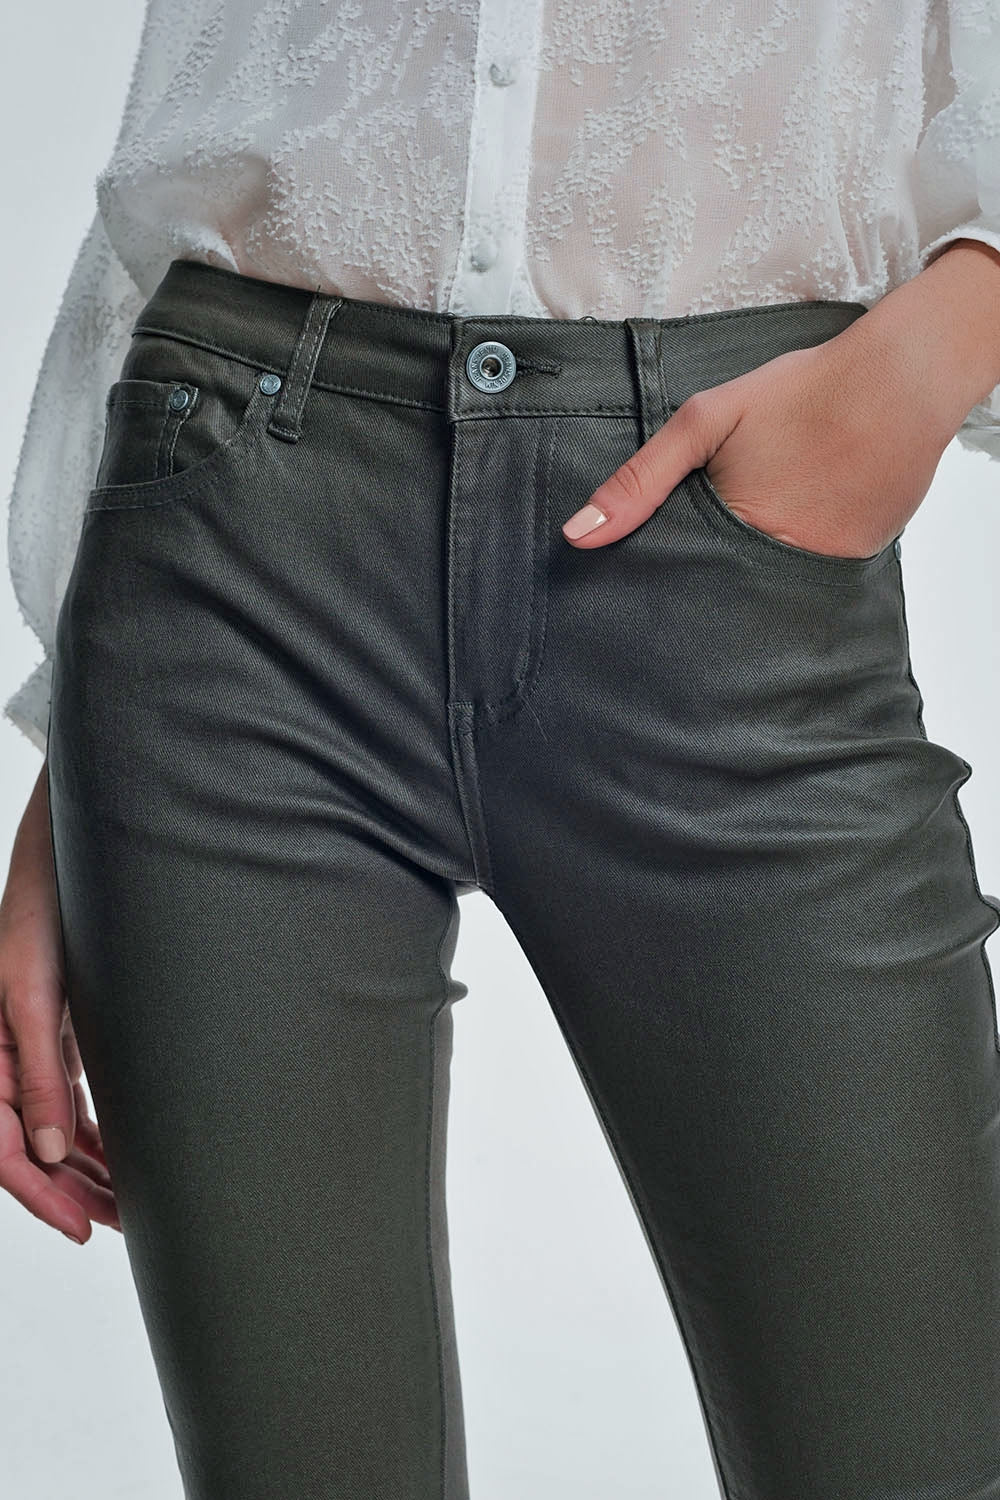 coated pants in khaki Szua Store